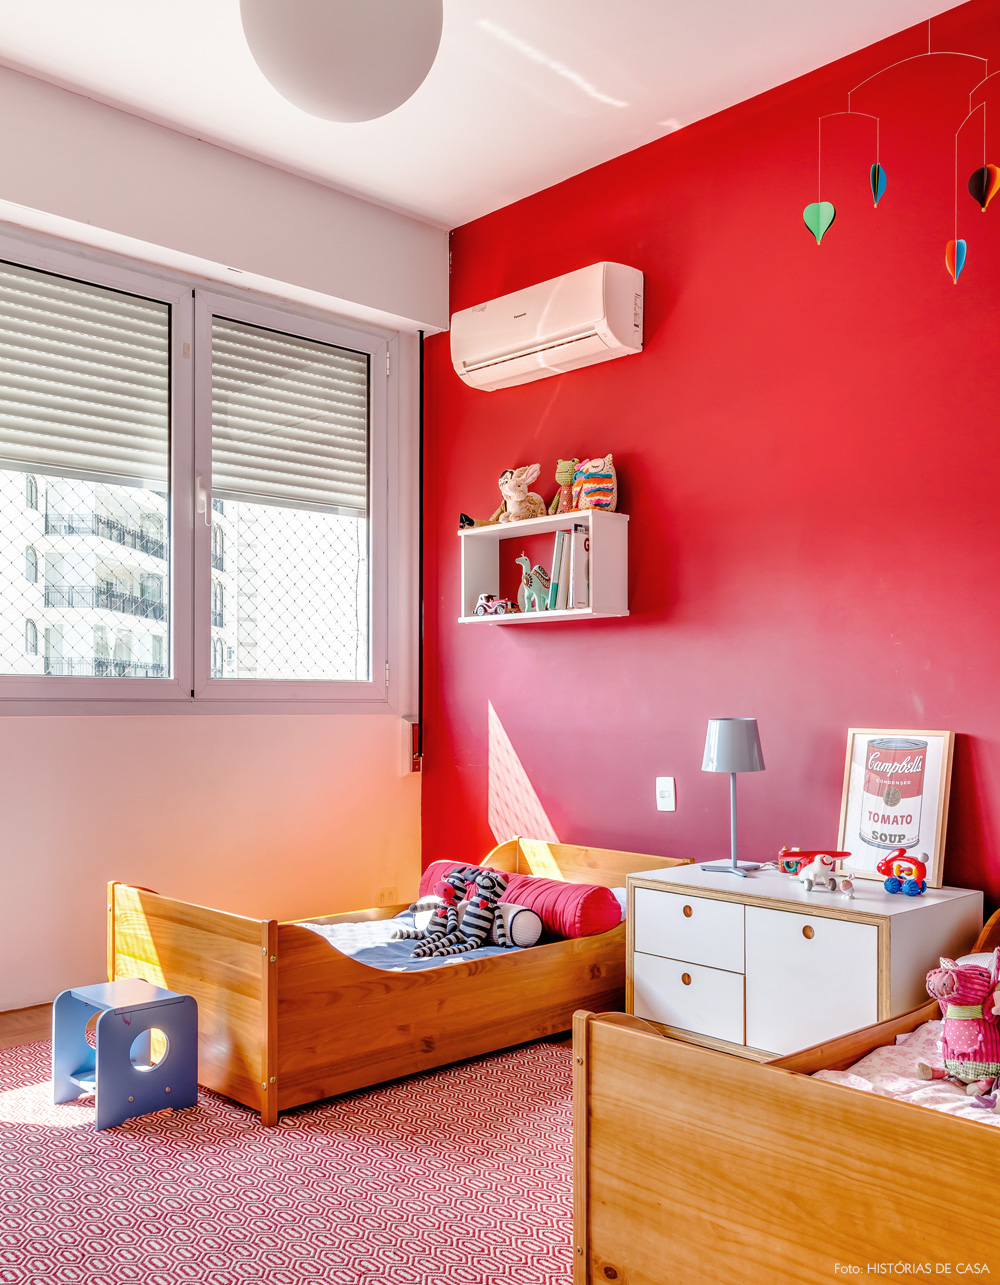 27-decoracao-quarto-crianca-irmaos-parede-vermelha